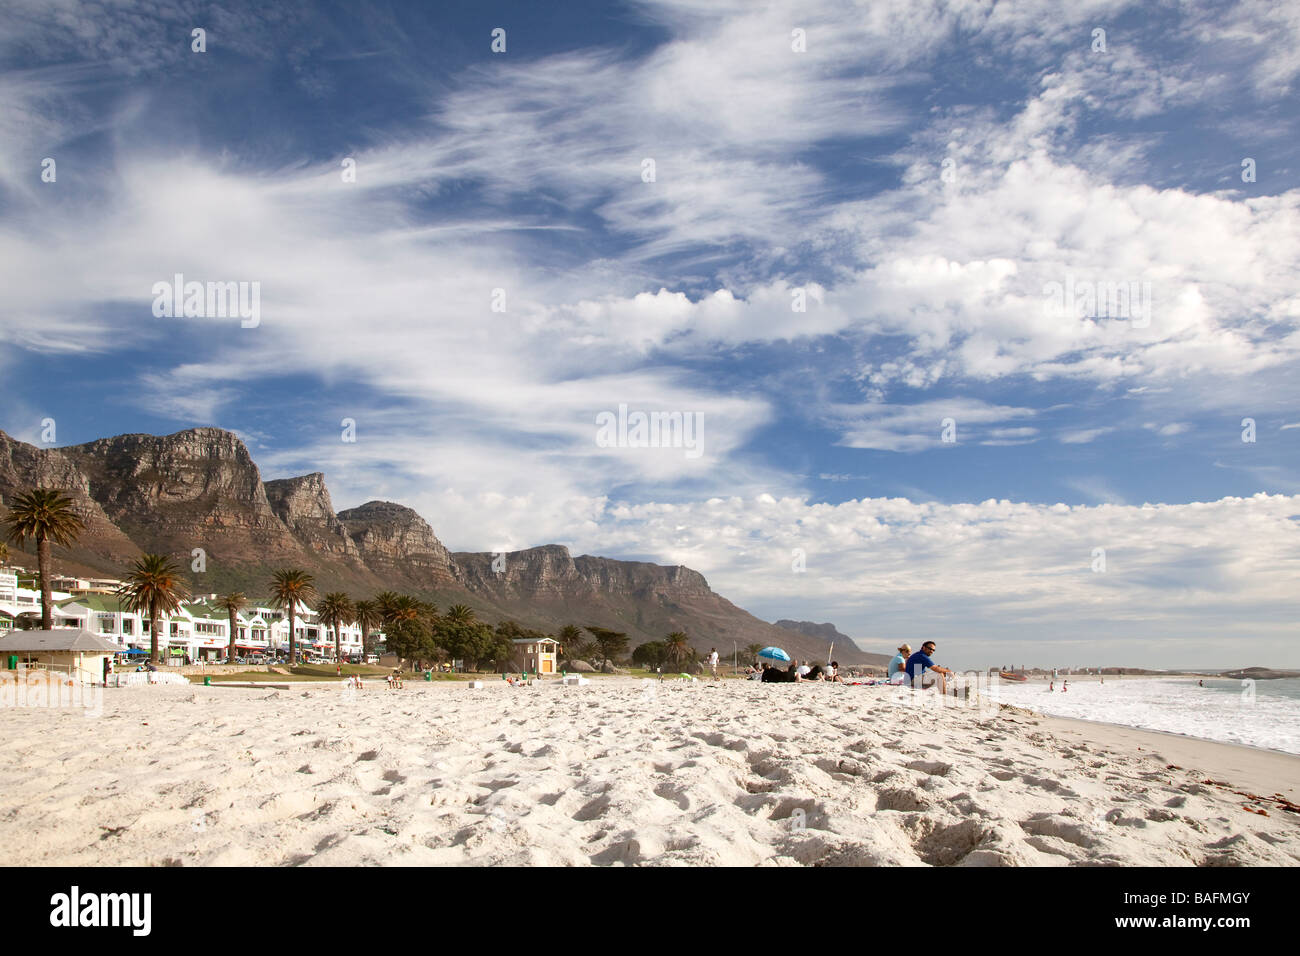 Afficher le long de la plage de Camps Bay à montagnes, Cape Town, Afrique du Sud Banque D'Images